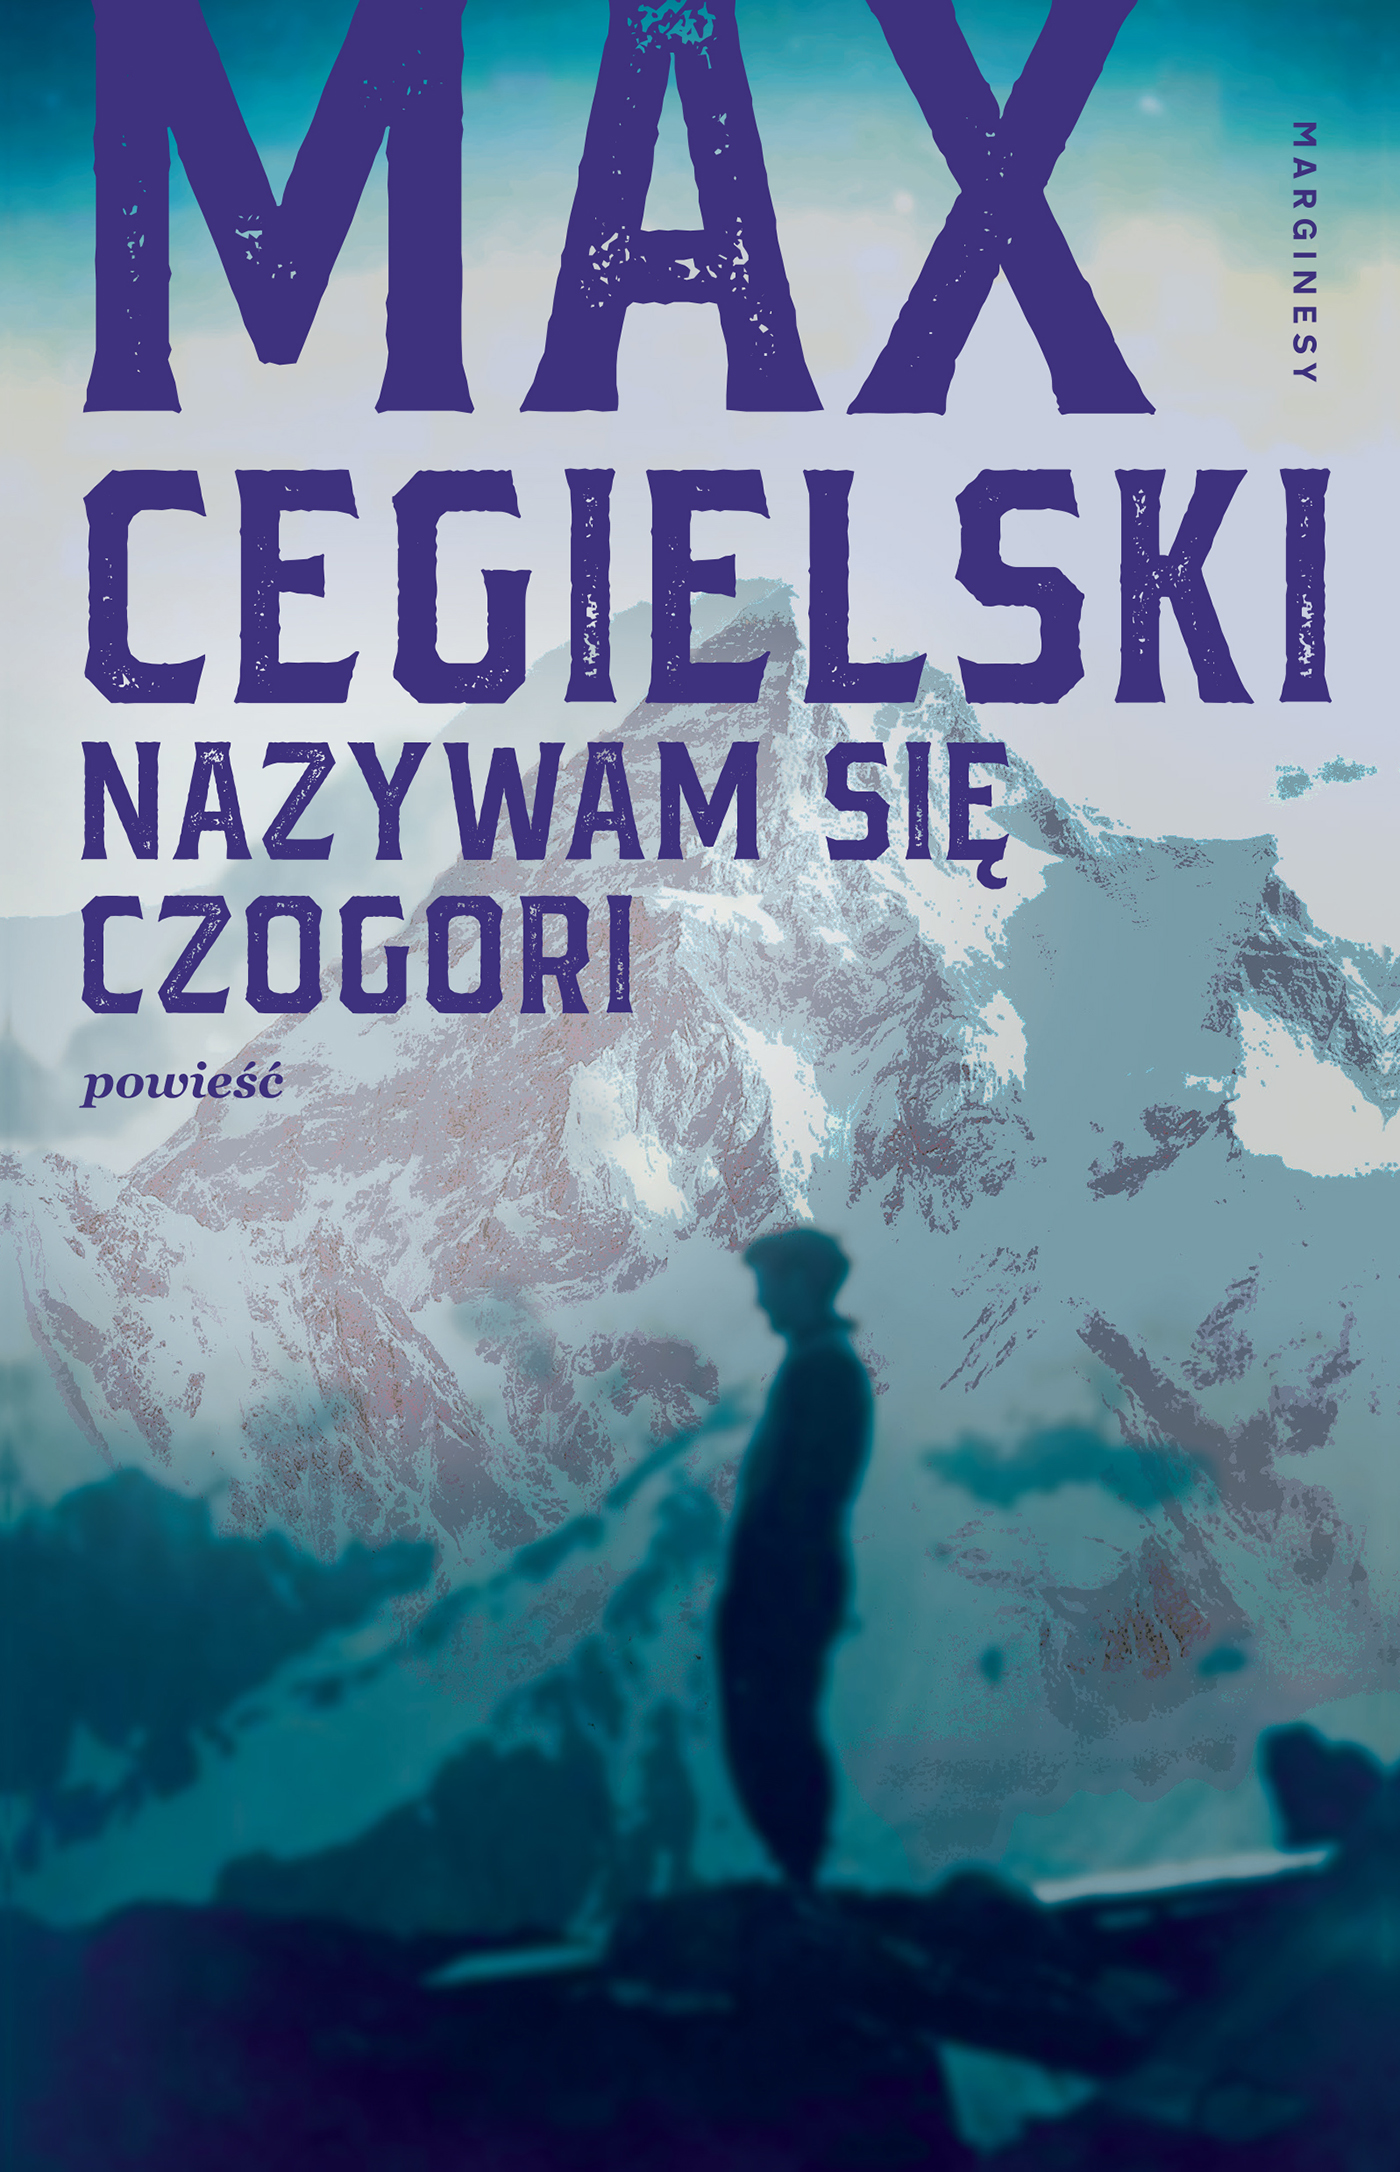 Max Cegielski - Nazywam się Czogori, Wydawnictwo Marginesy